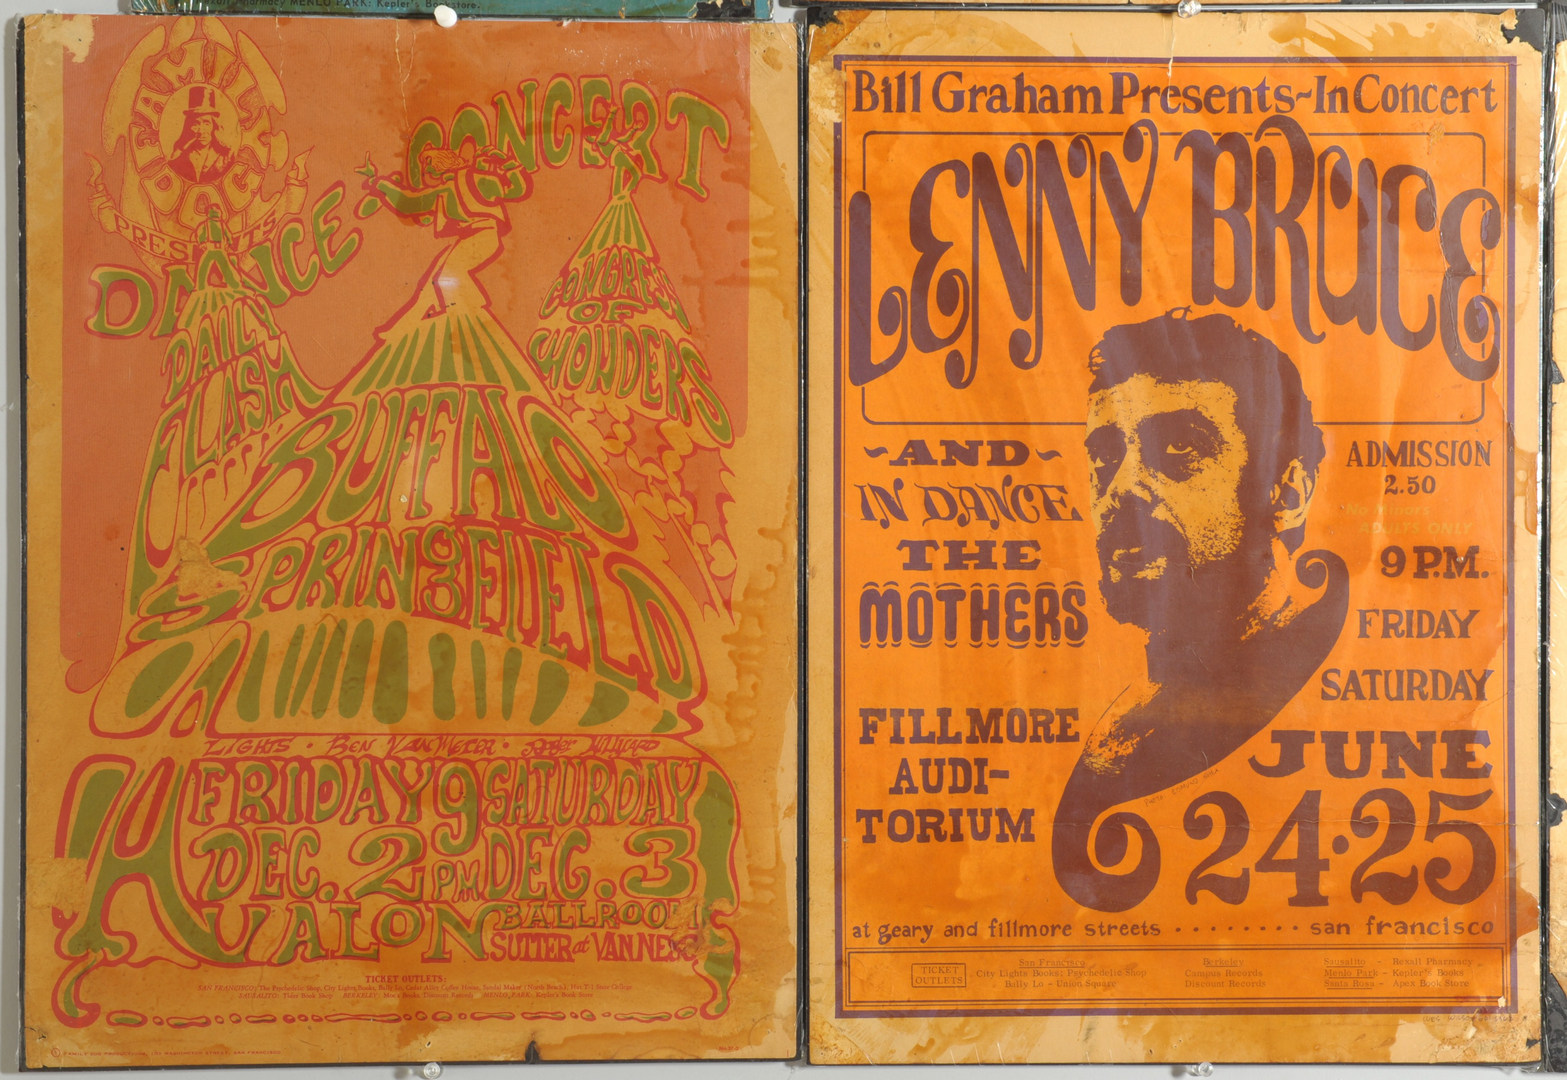 Lot 599: Six 1960s Era Concert Posters